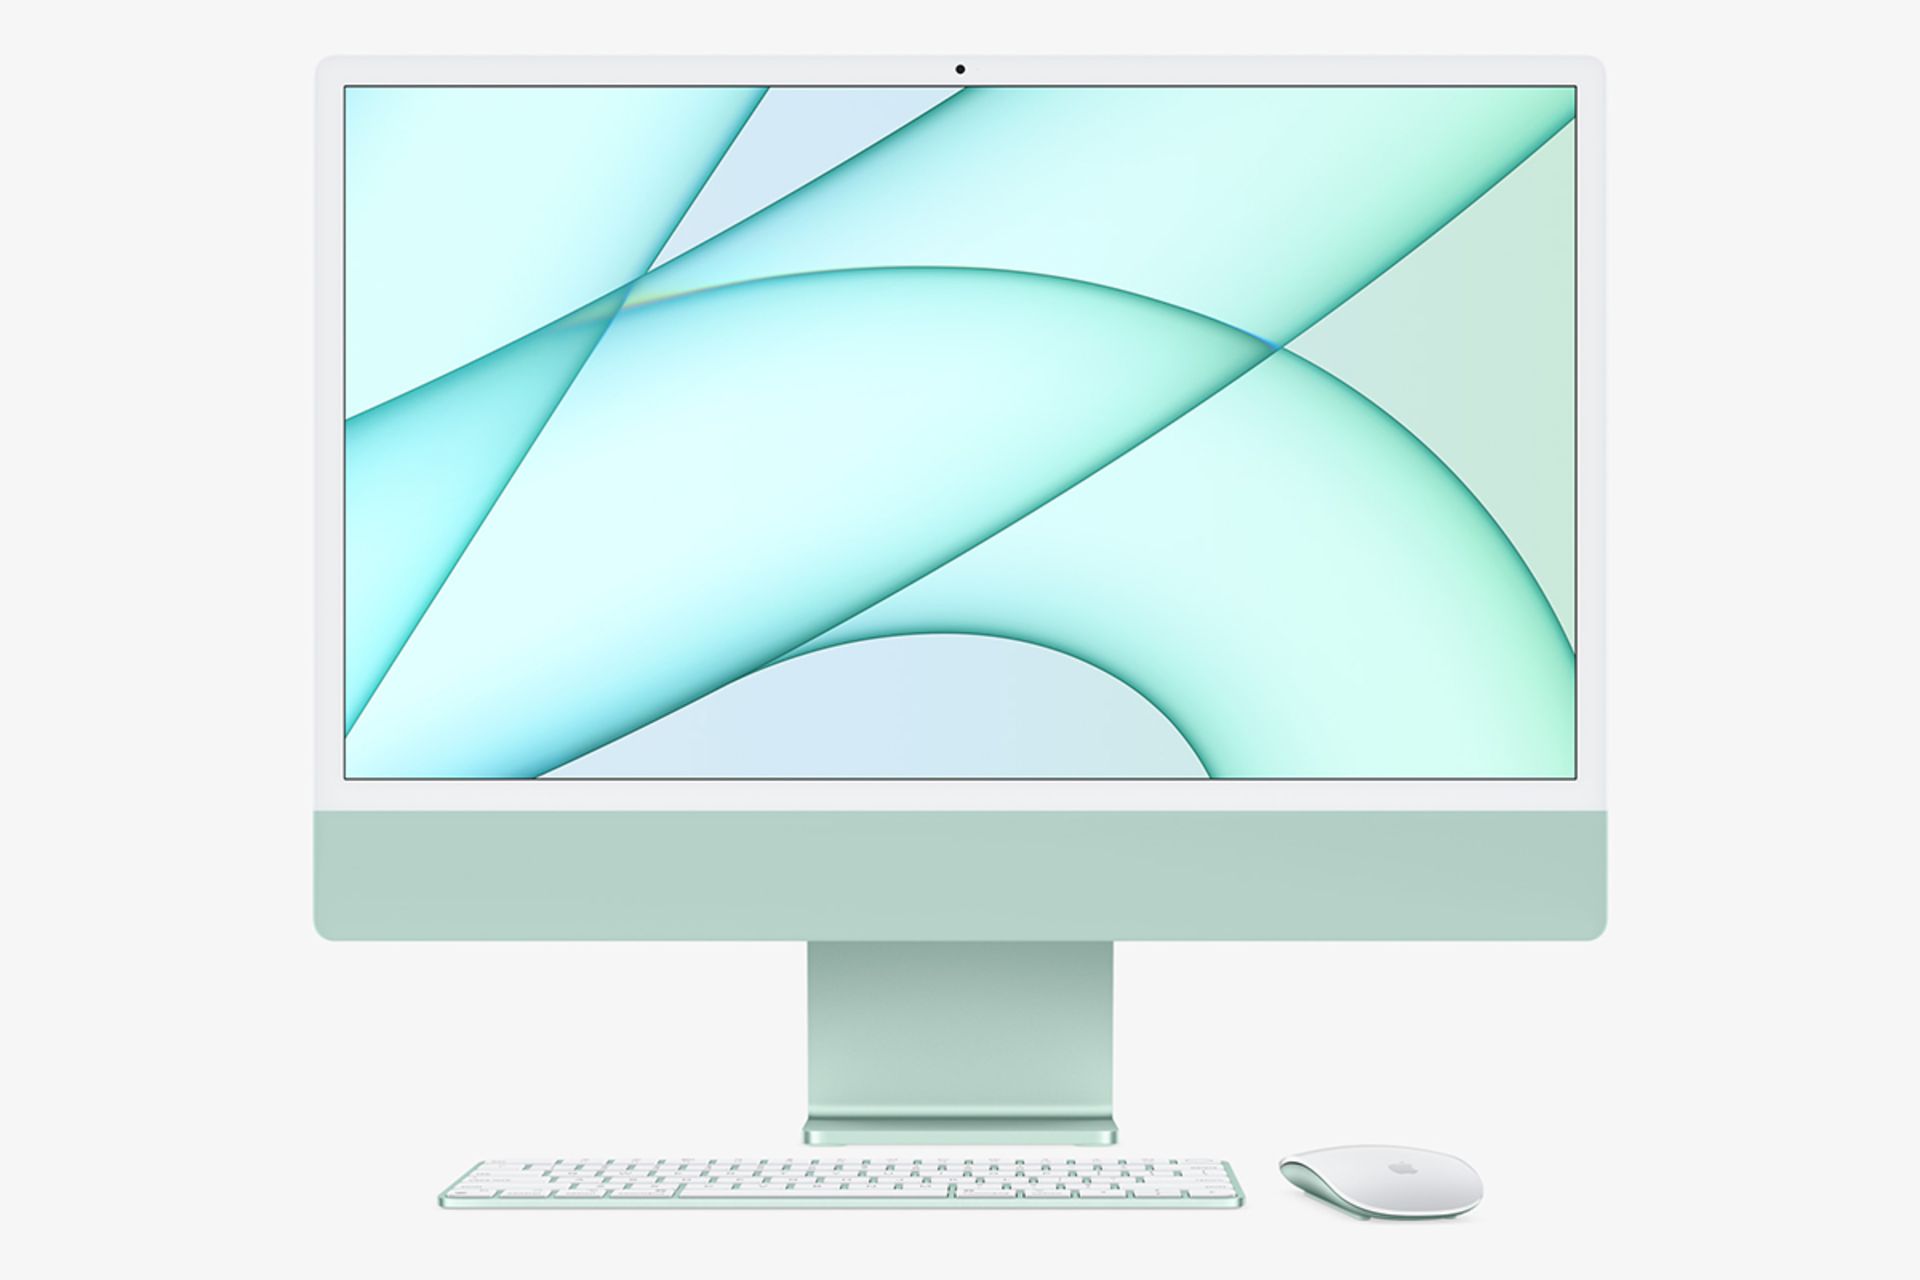  کامپیوتر iMac  M1 رنگ سبز